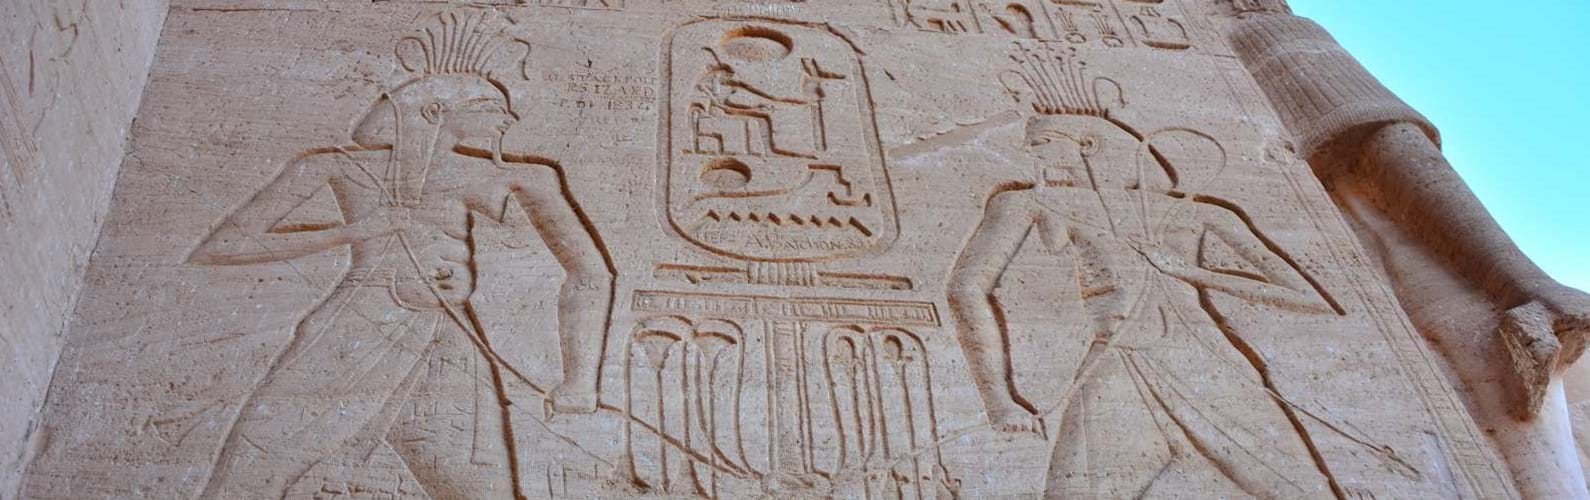 Hechos de la mitología egipcia